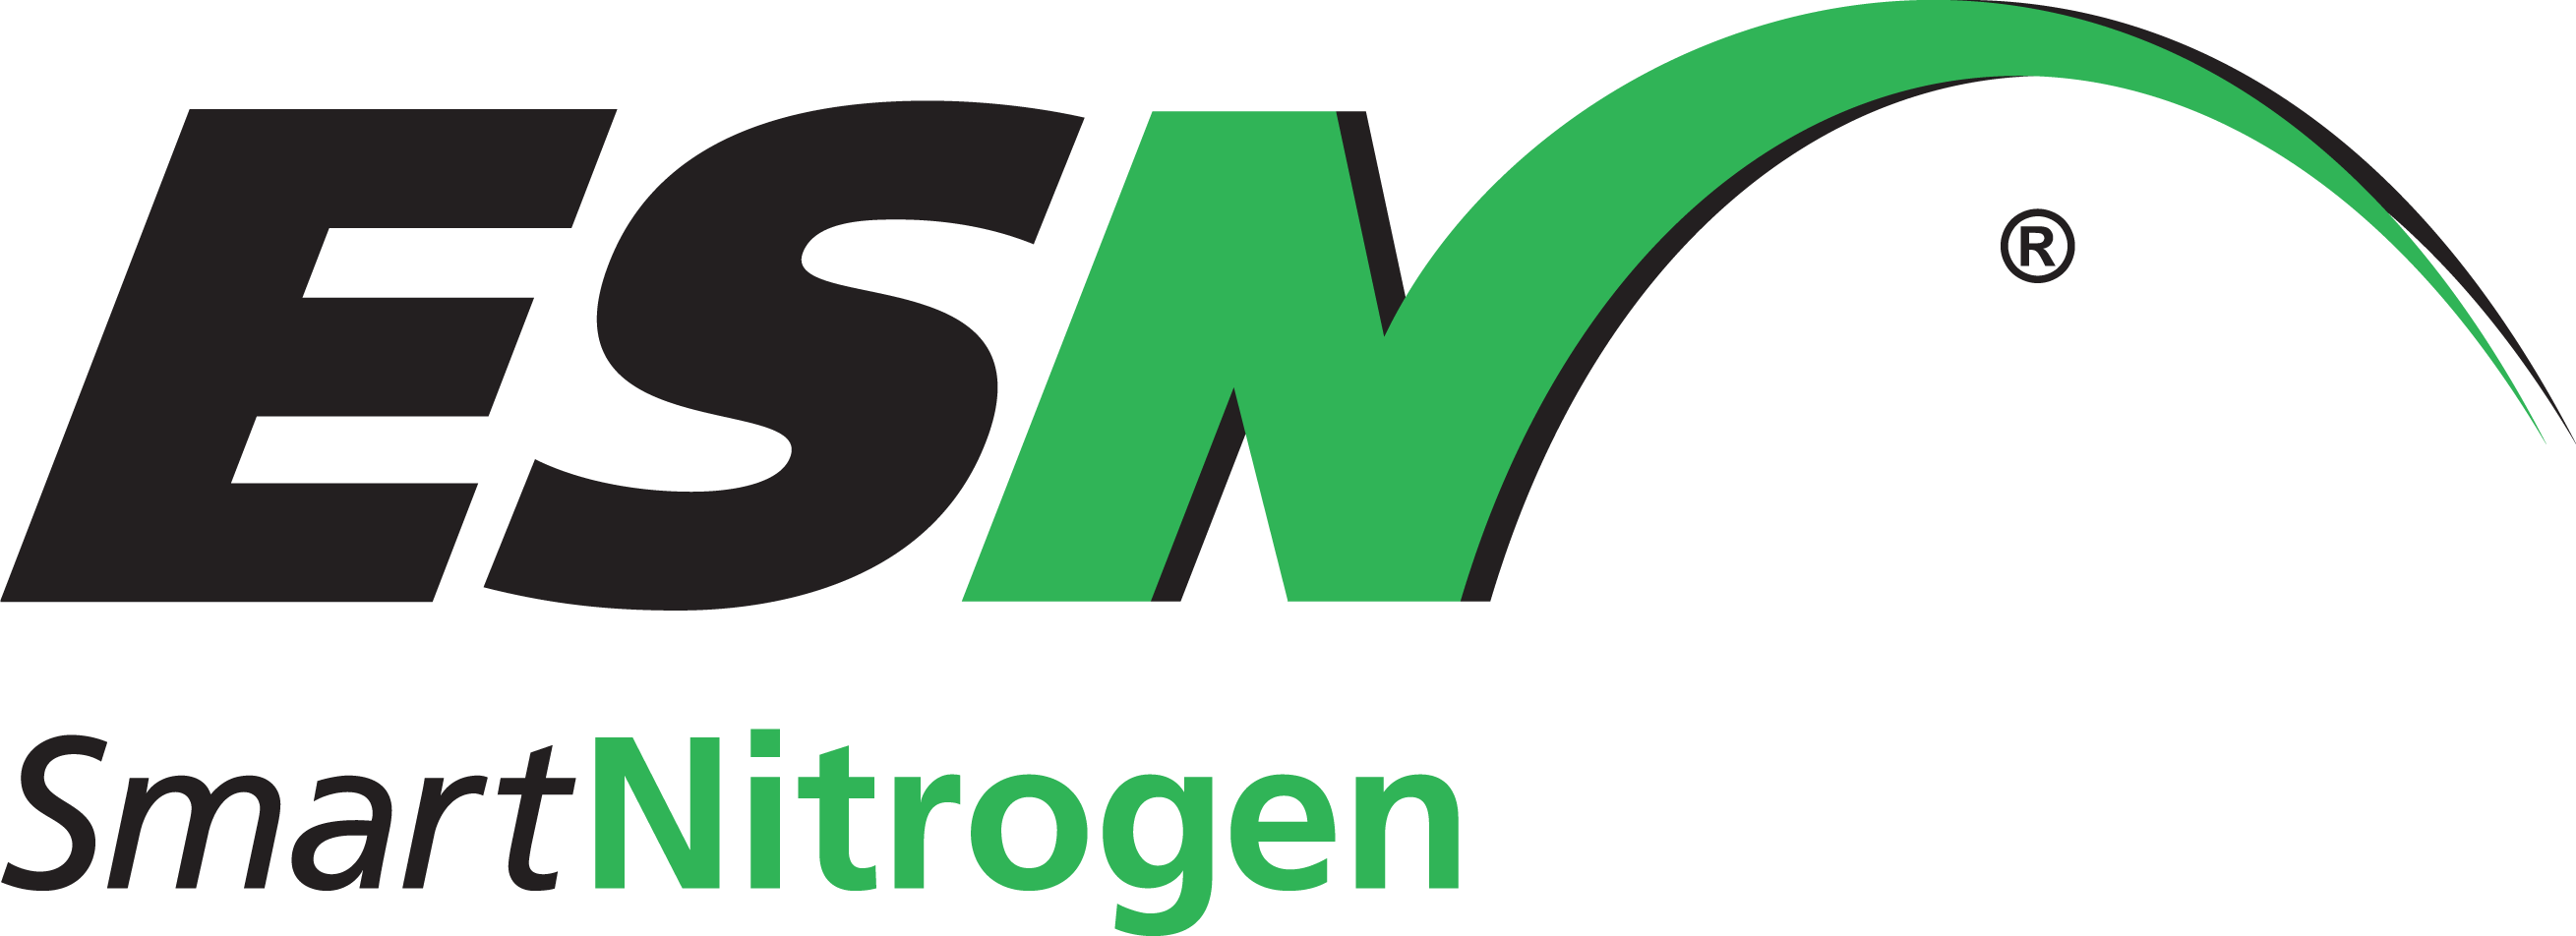 Nutrien Logo - Logos | Nutrien